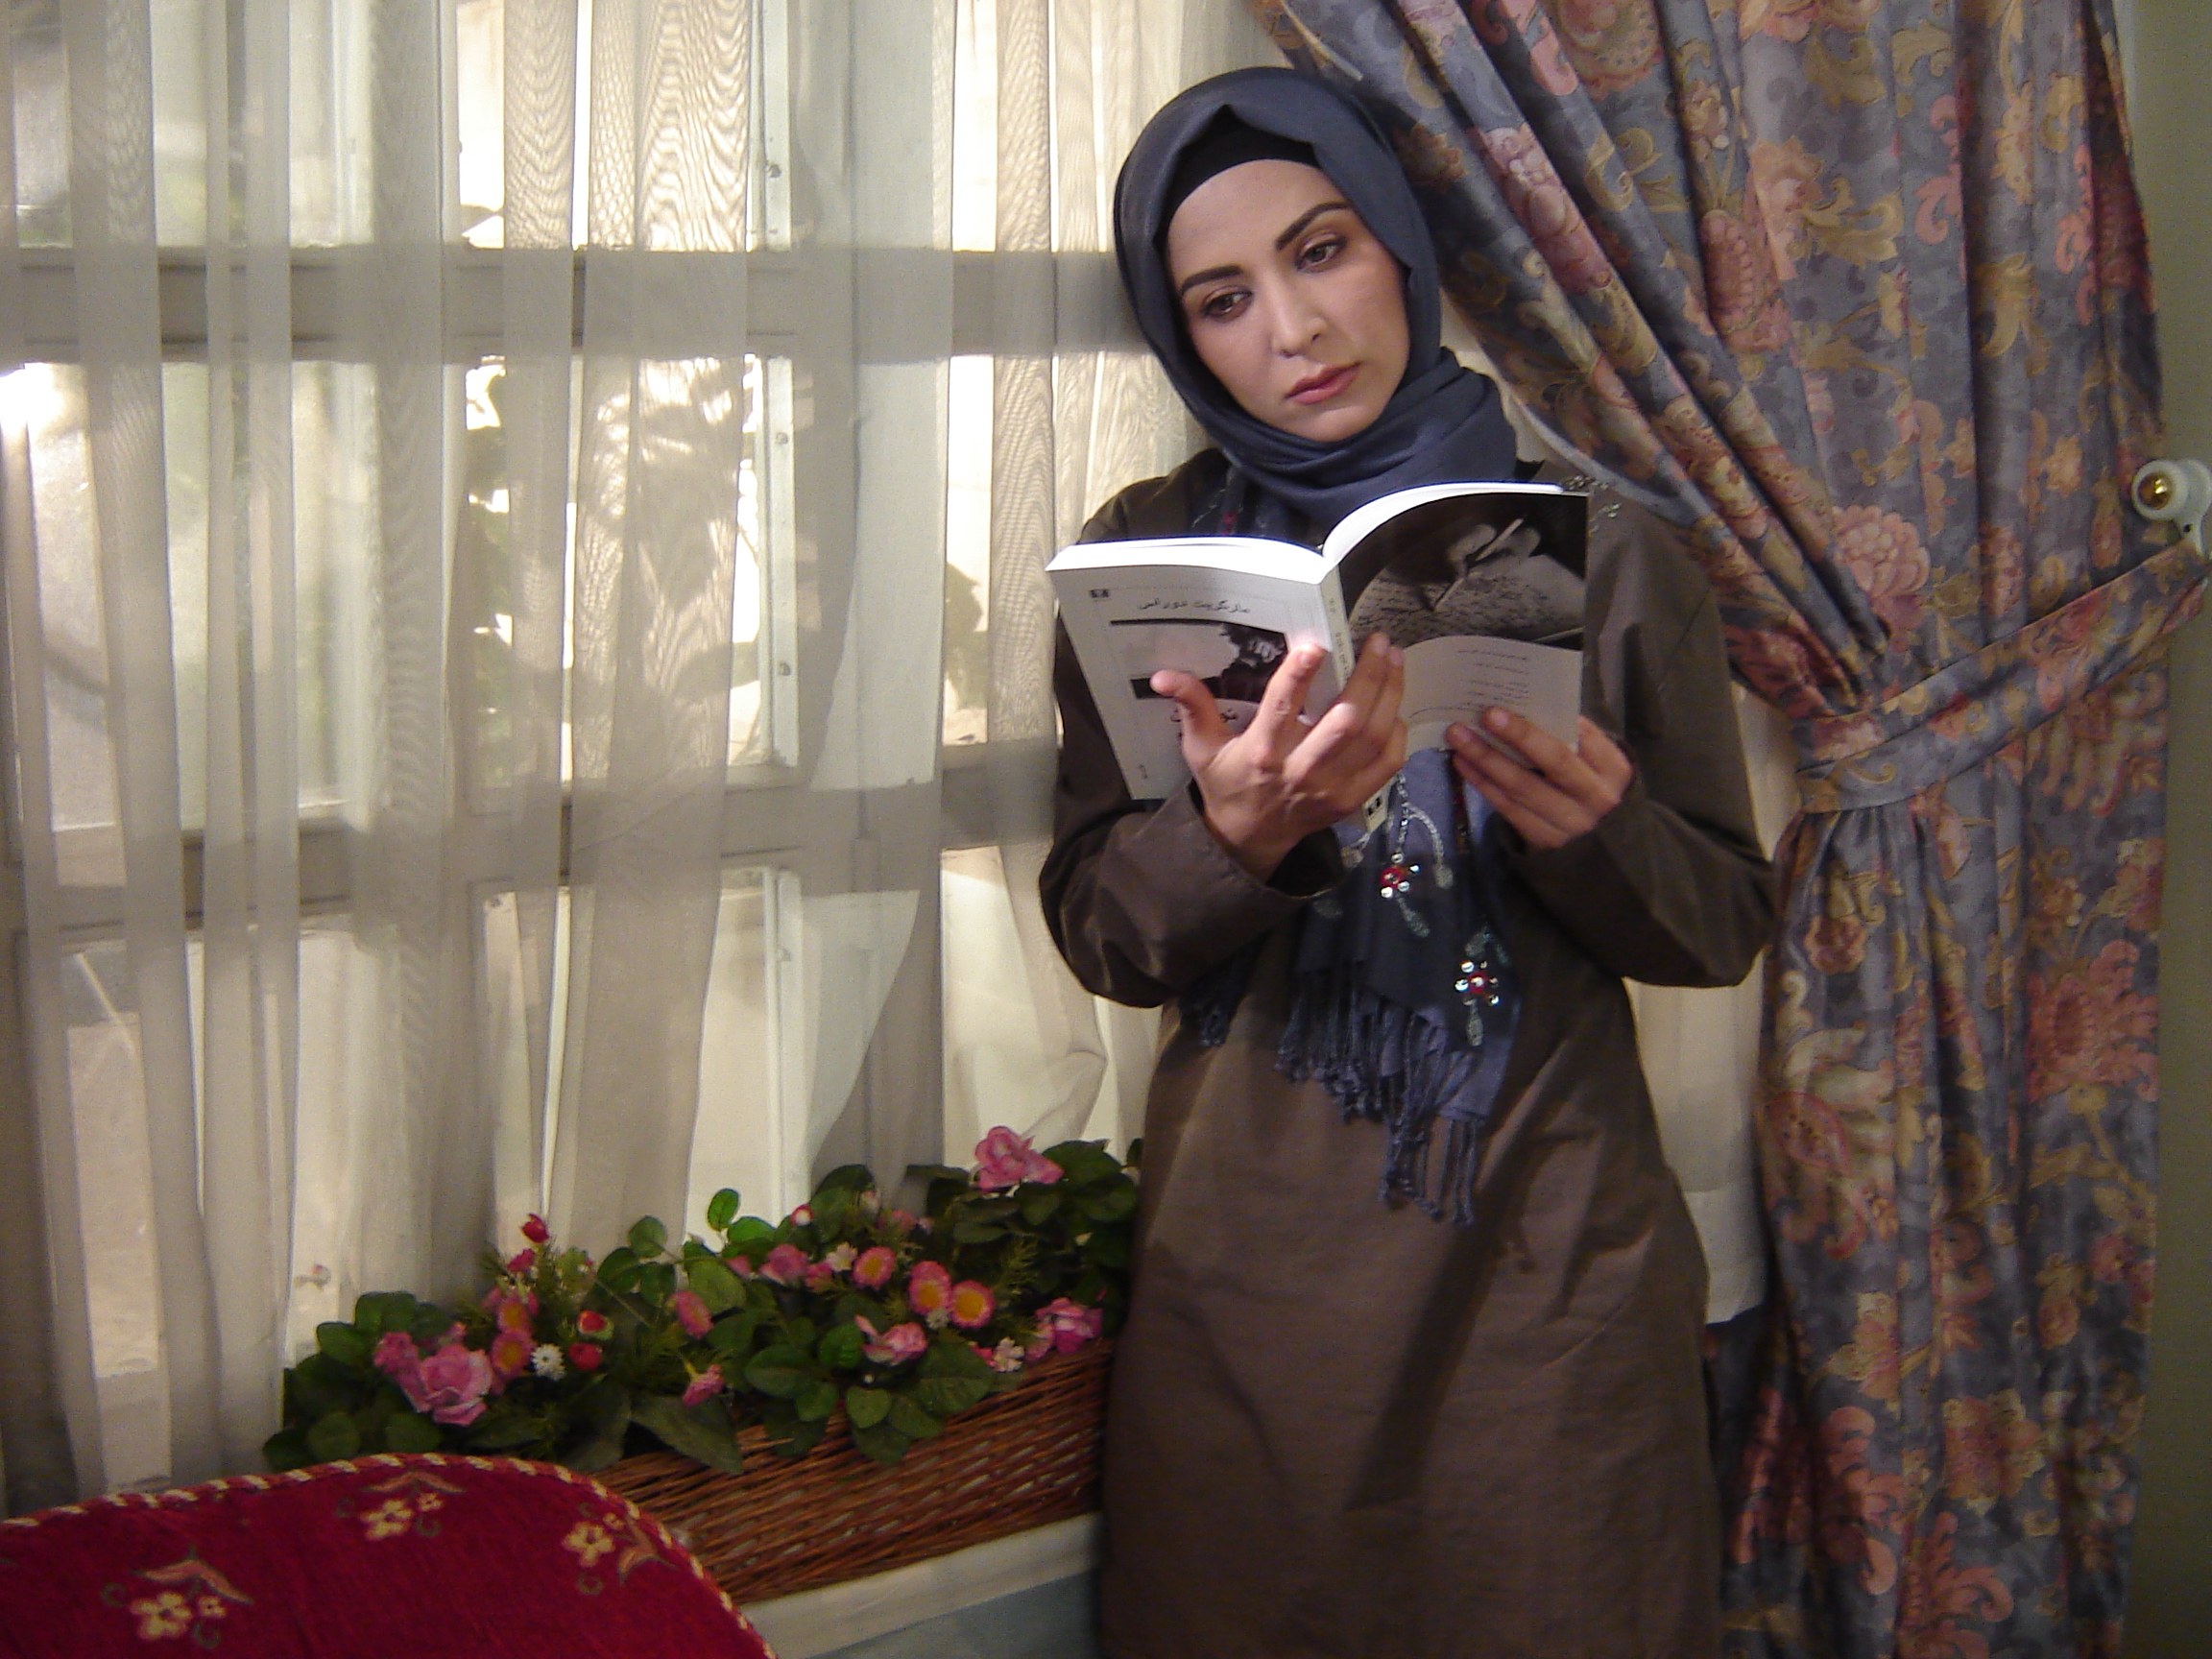 تصویری از حمیدرضا حافظی، نویسنده سینما و تلویزیون در حال بازیگری سر صحنه یکی از آثارش